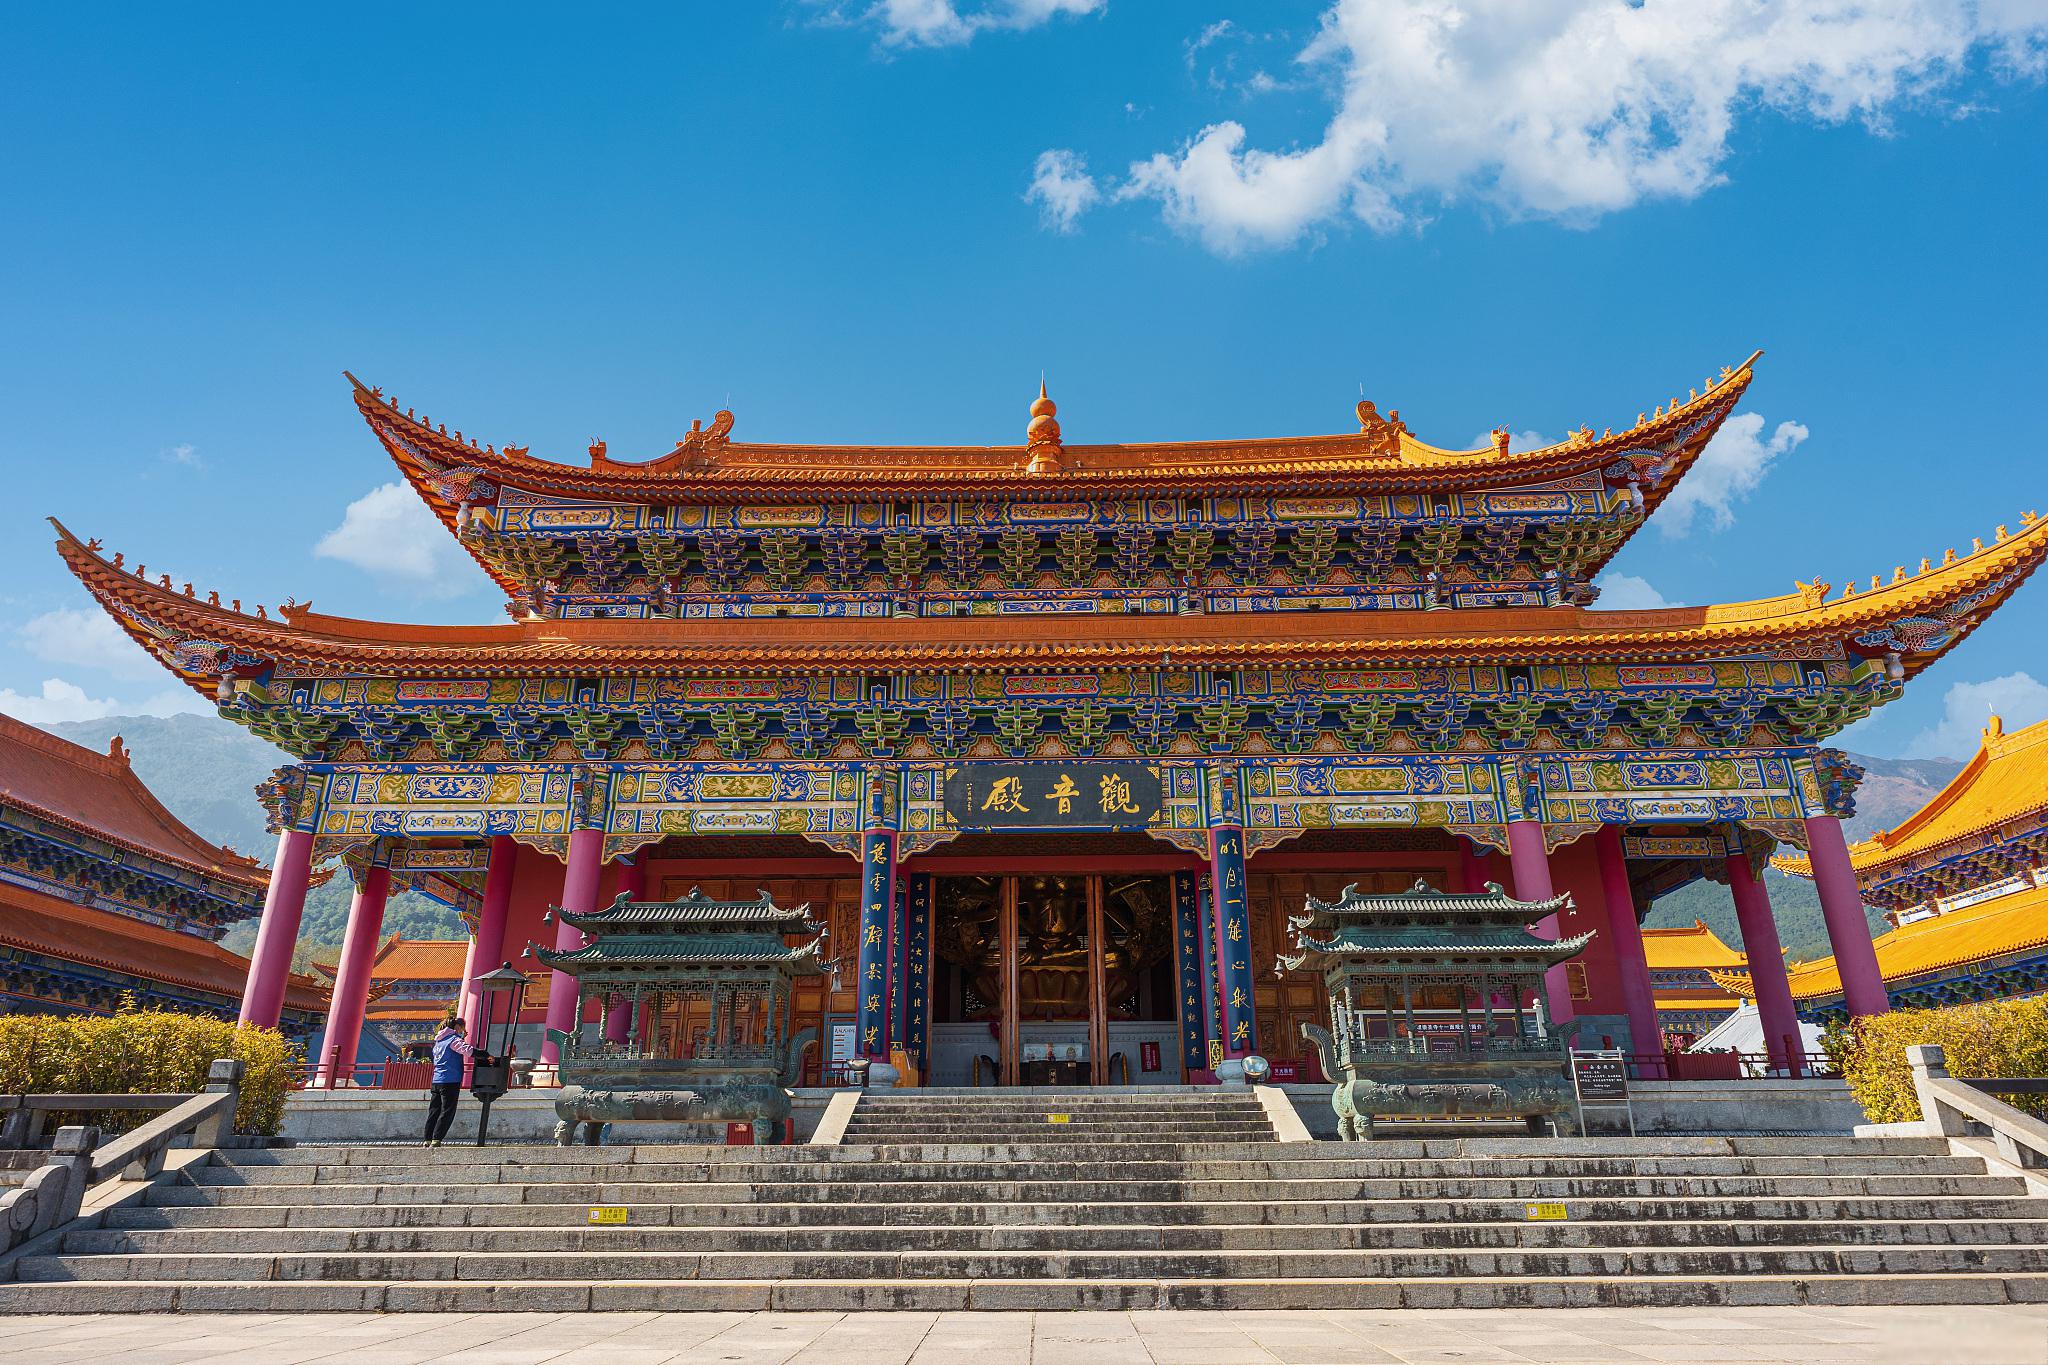 云南崇圣寺三塔:建筑,文化,艺术和自然的完美结合 在中国的广袤土地上